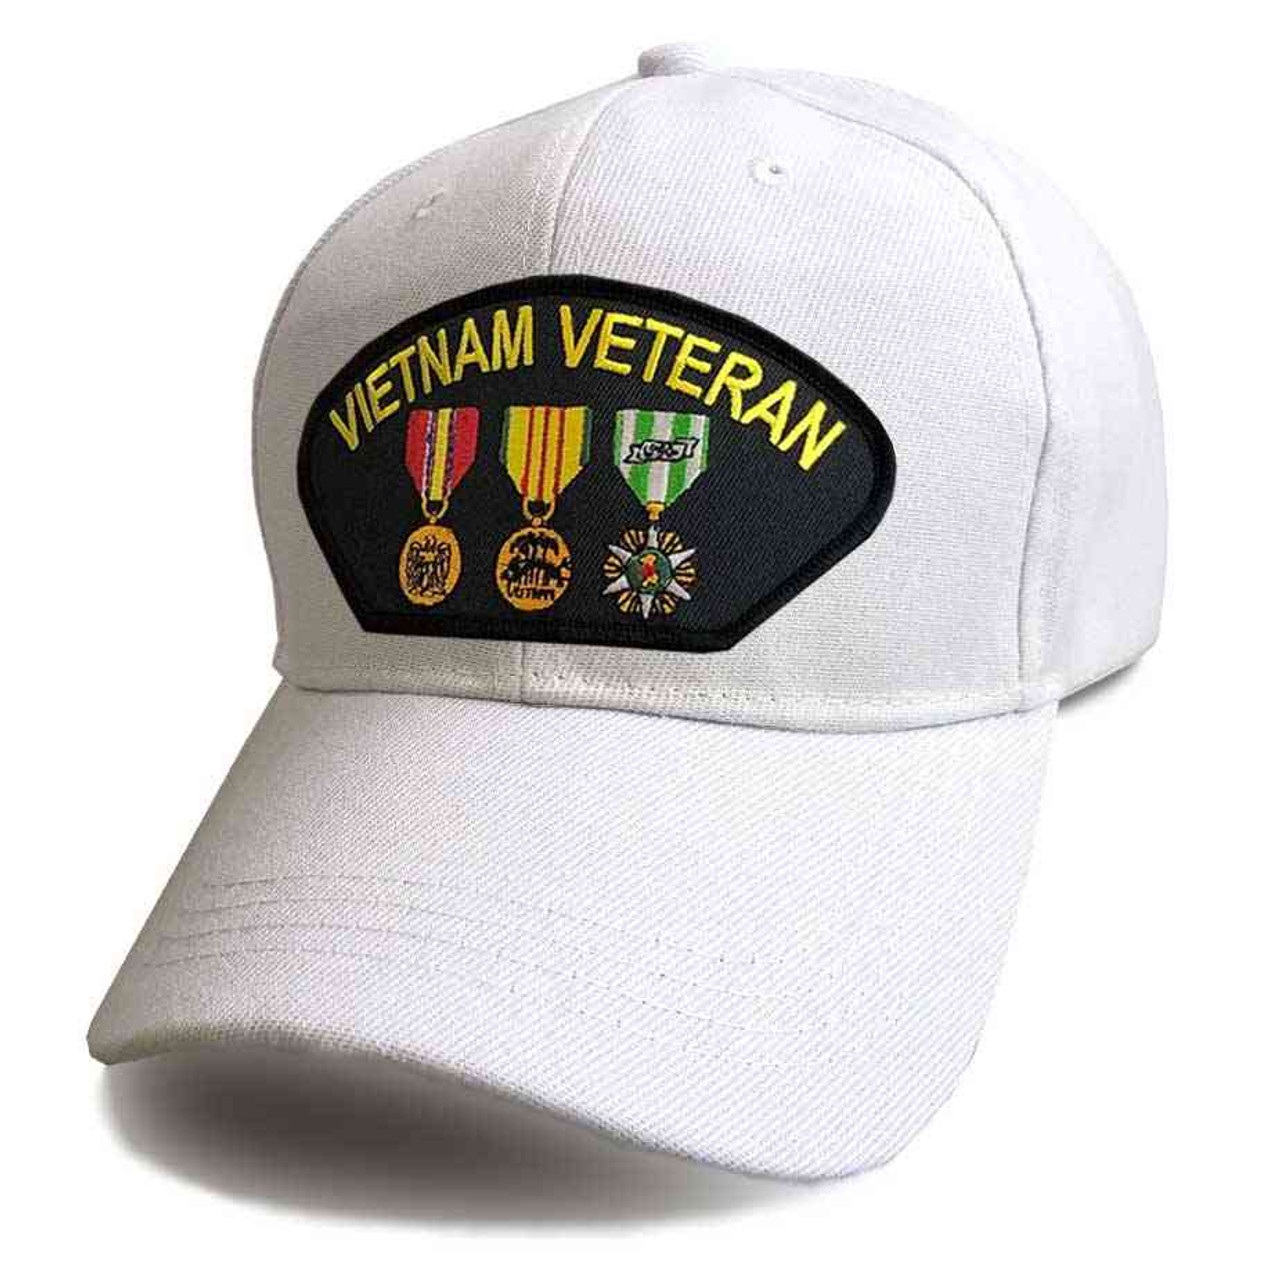 vietnam veteran hat 3 medals white